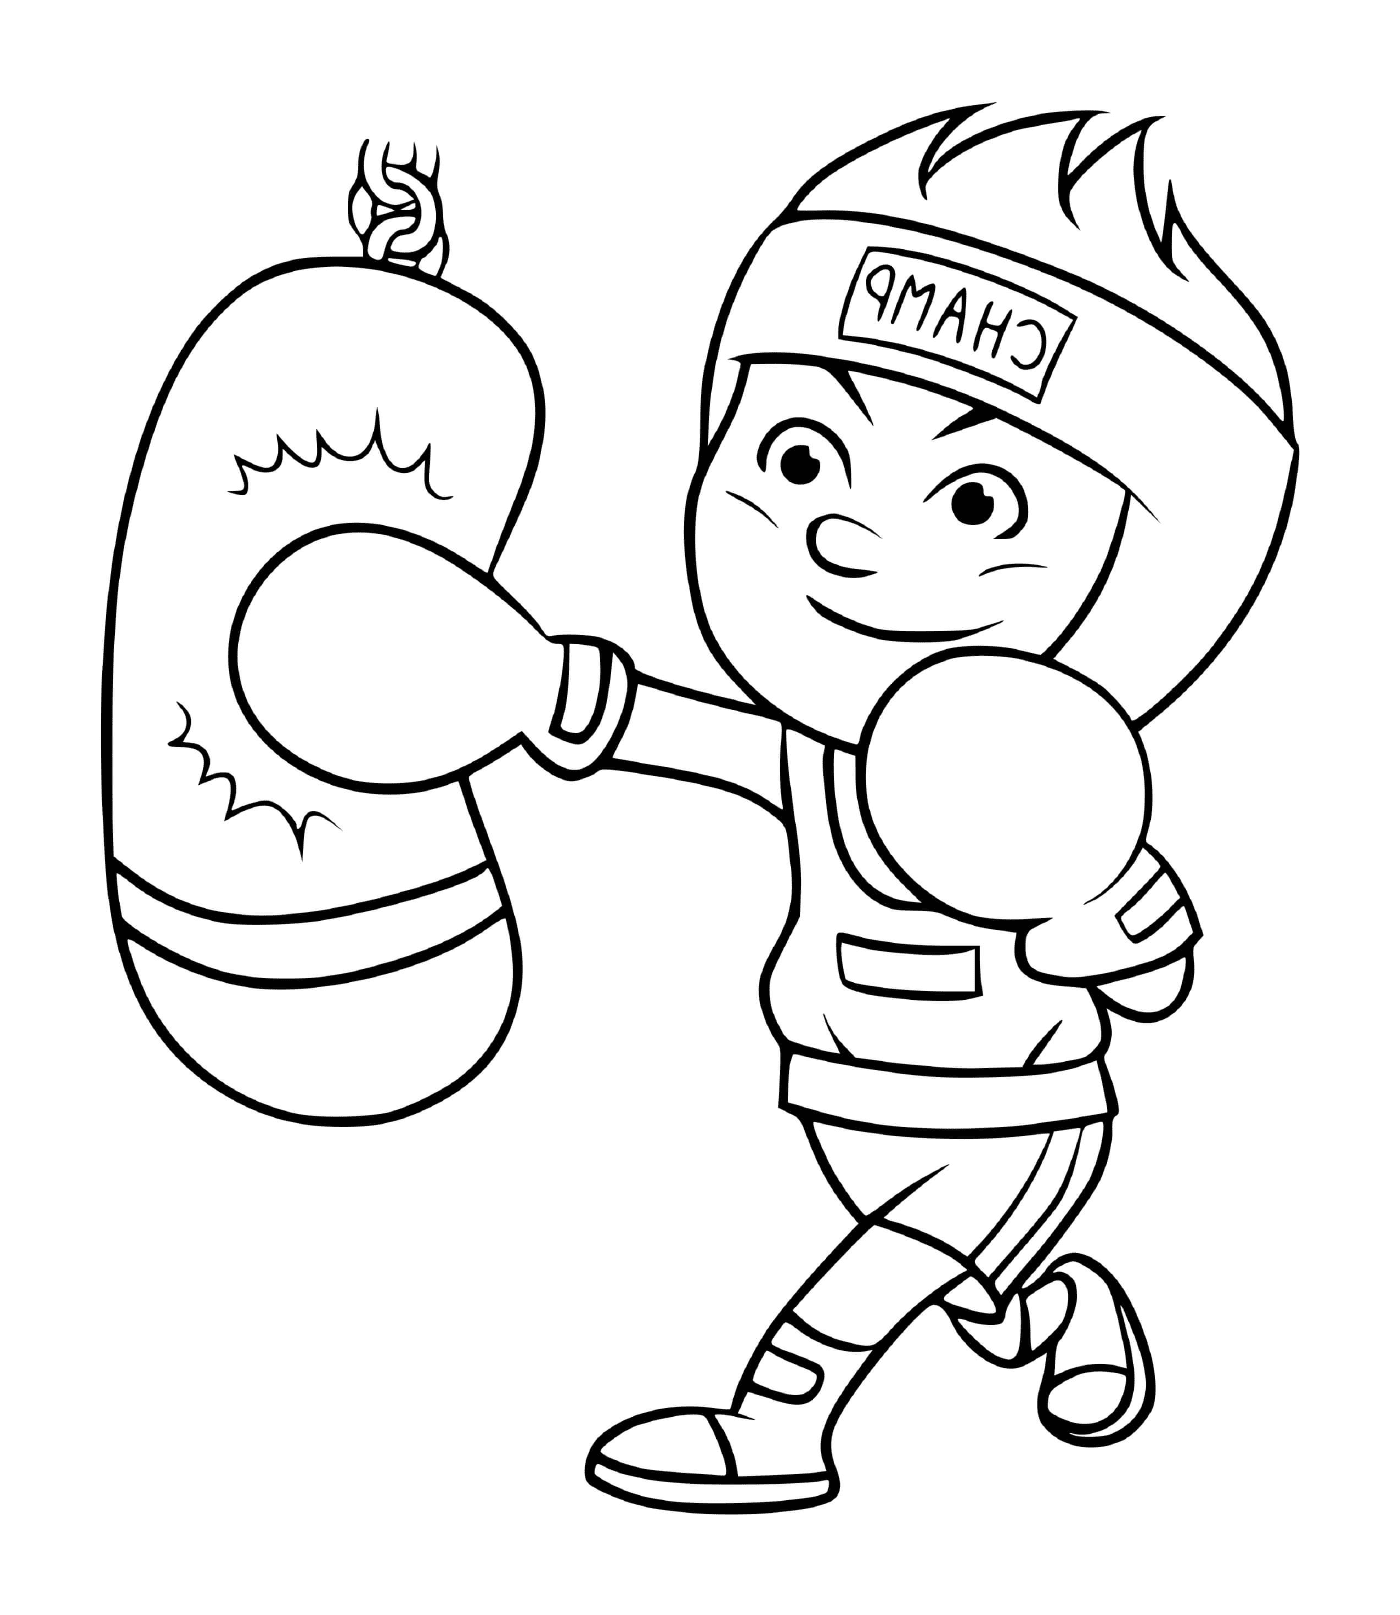   Un jeune garçon s'entraîne pour devenir champion de boxe 